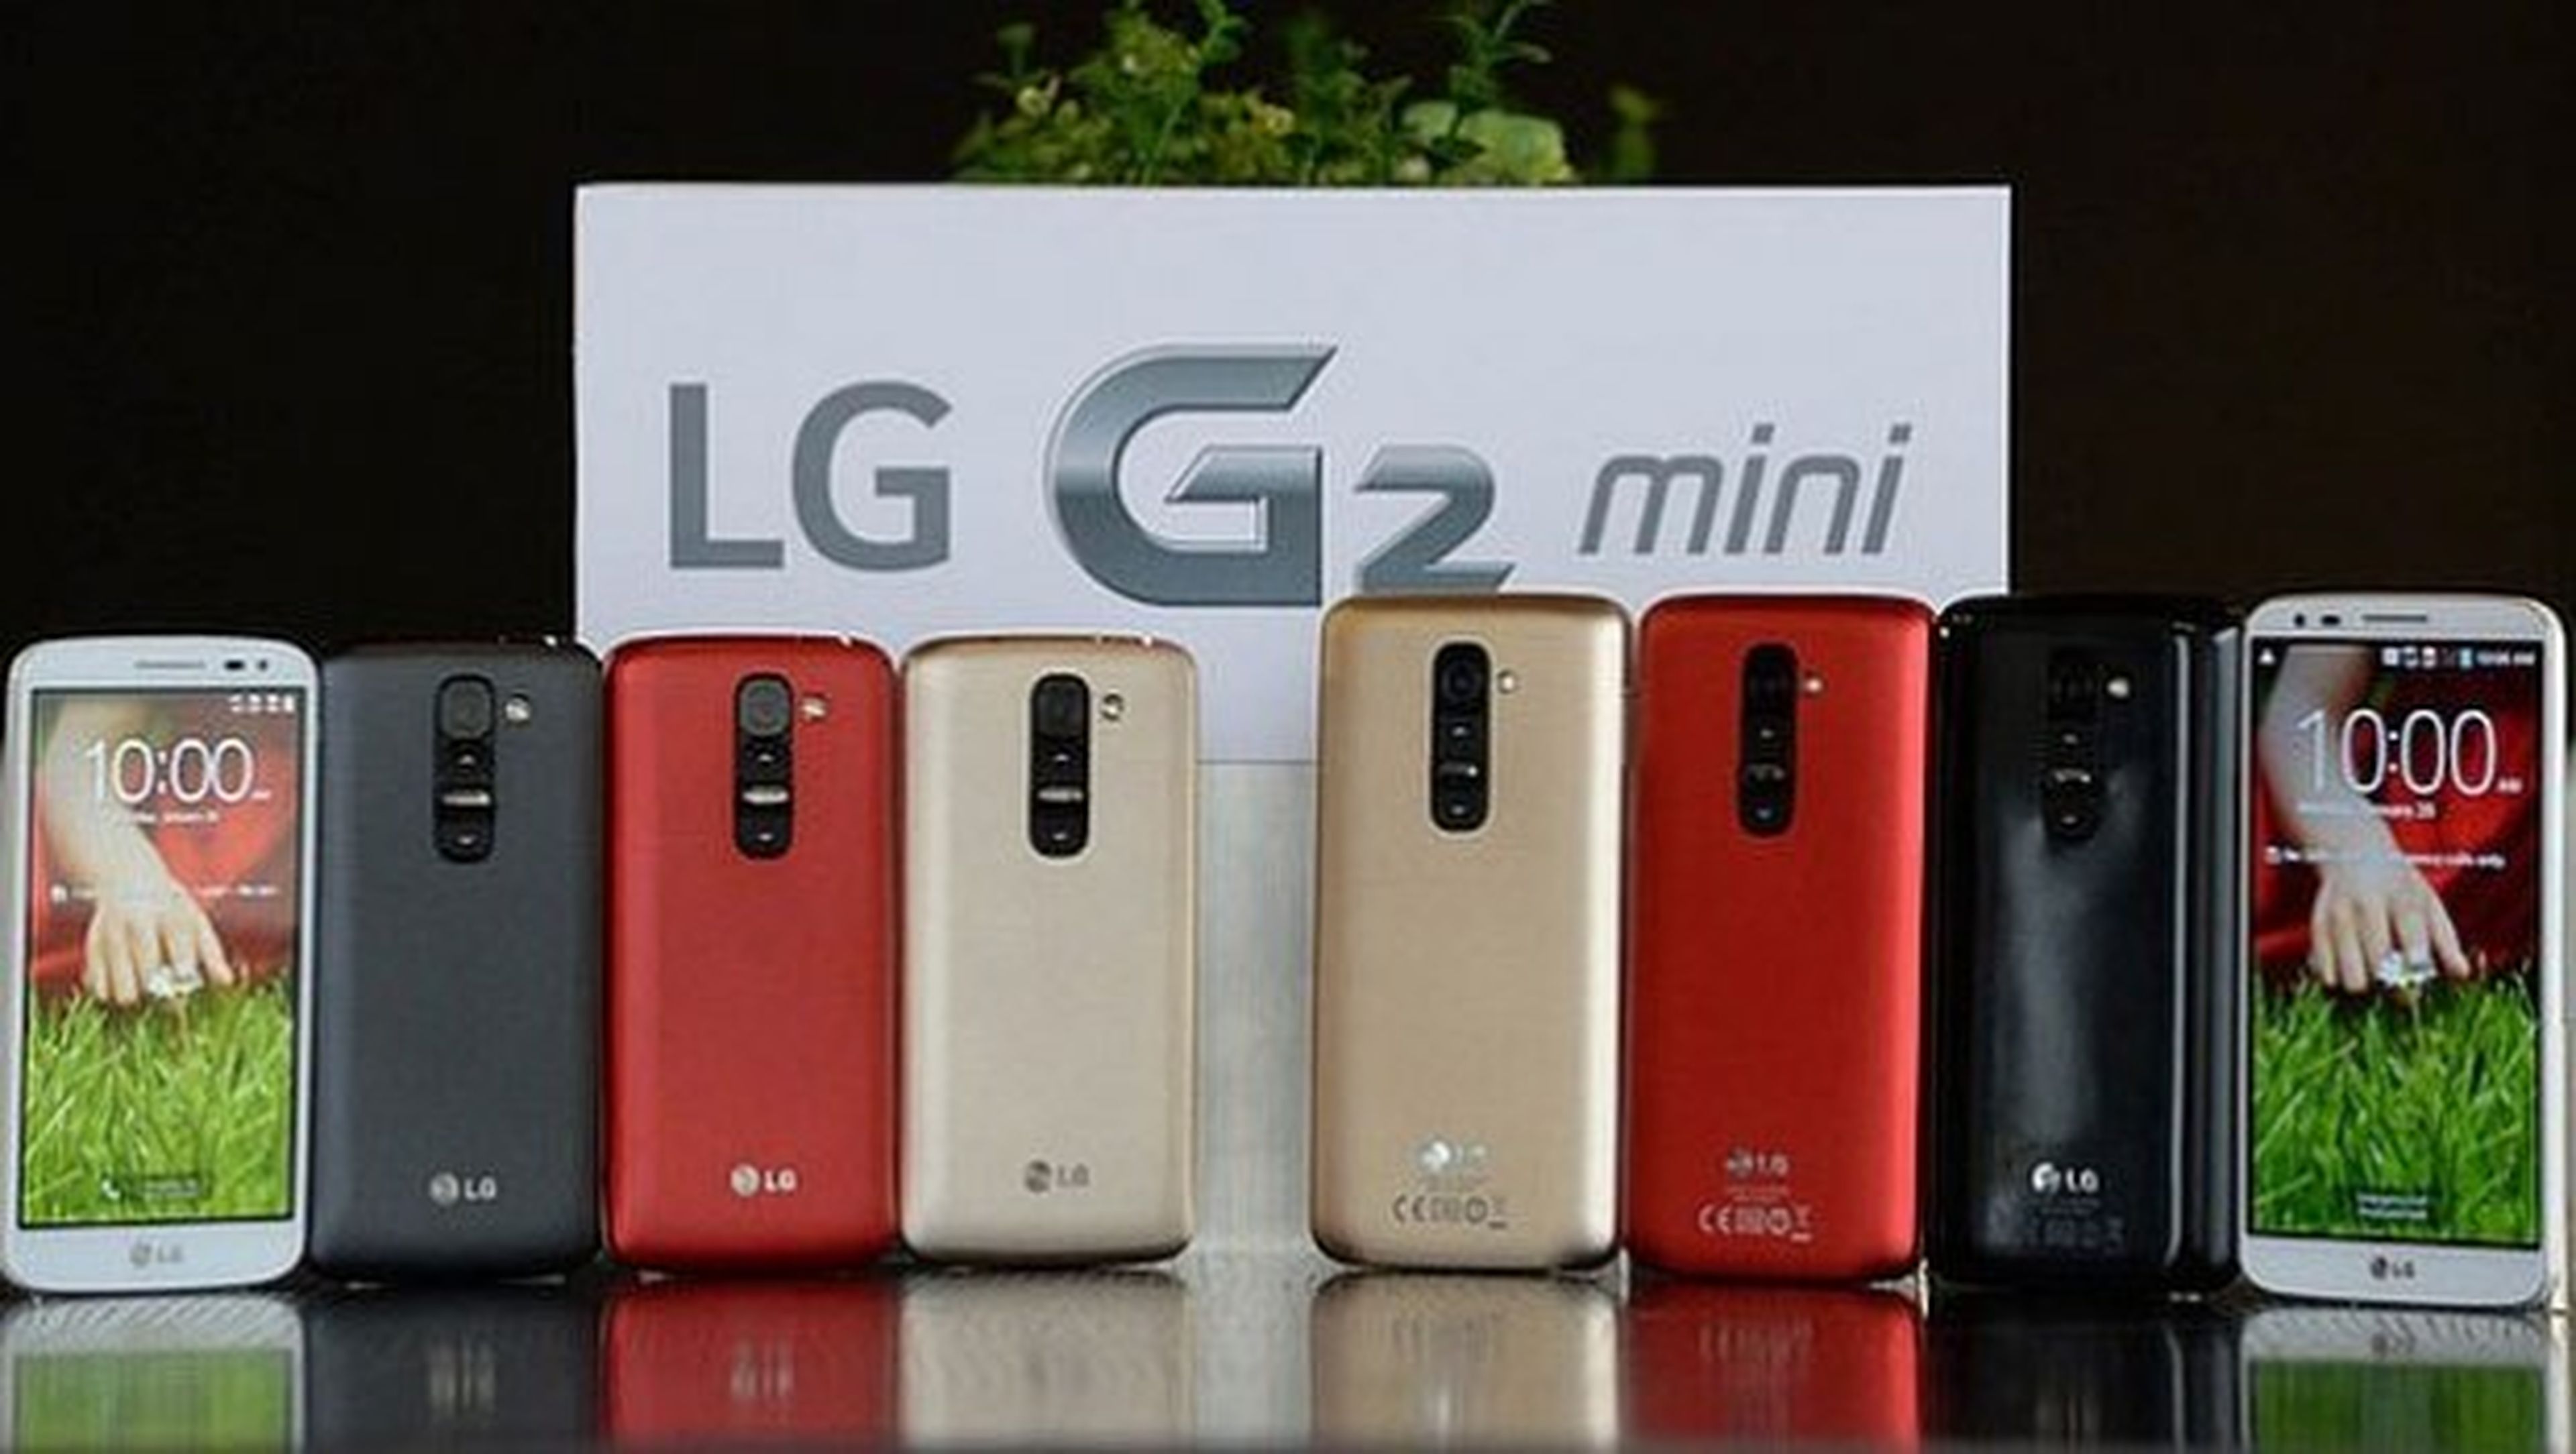 LG G2 mini MWC